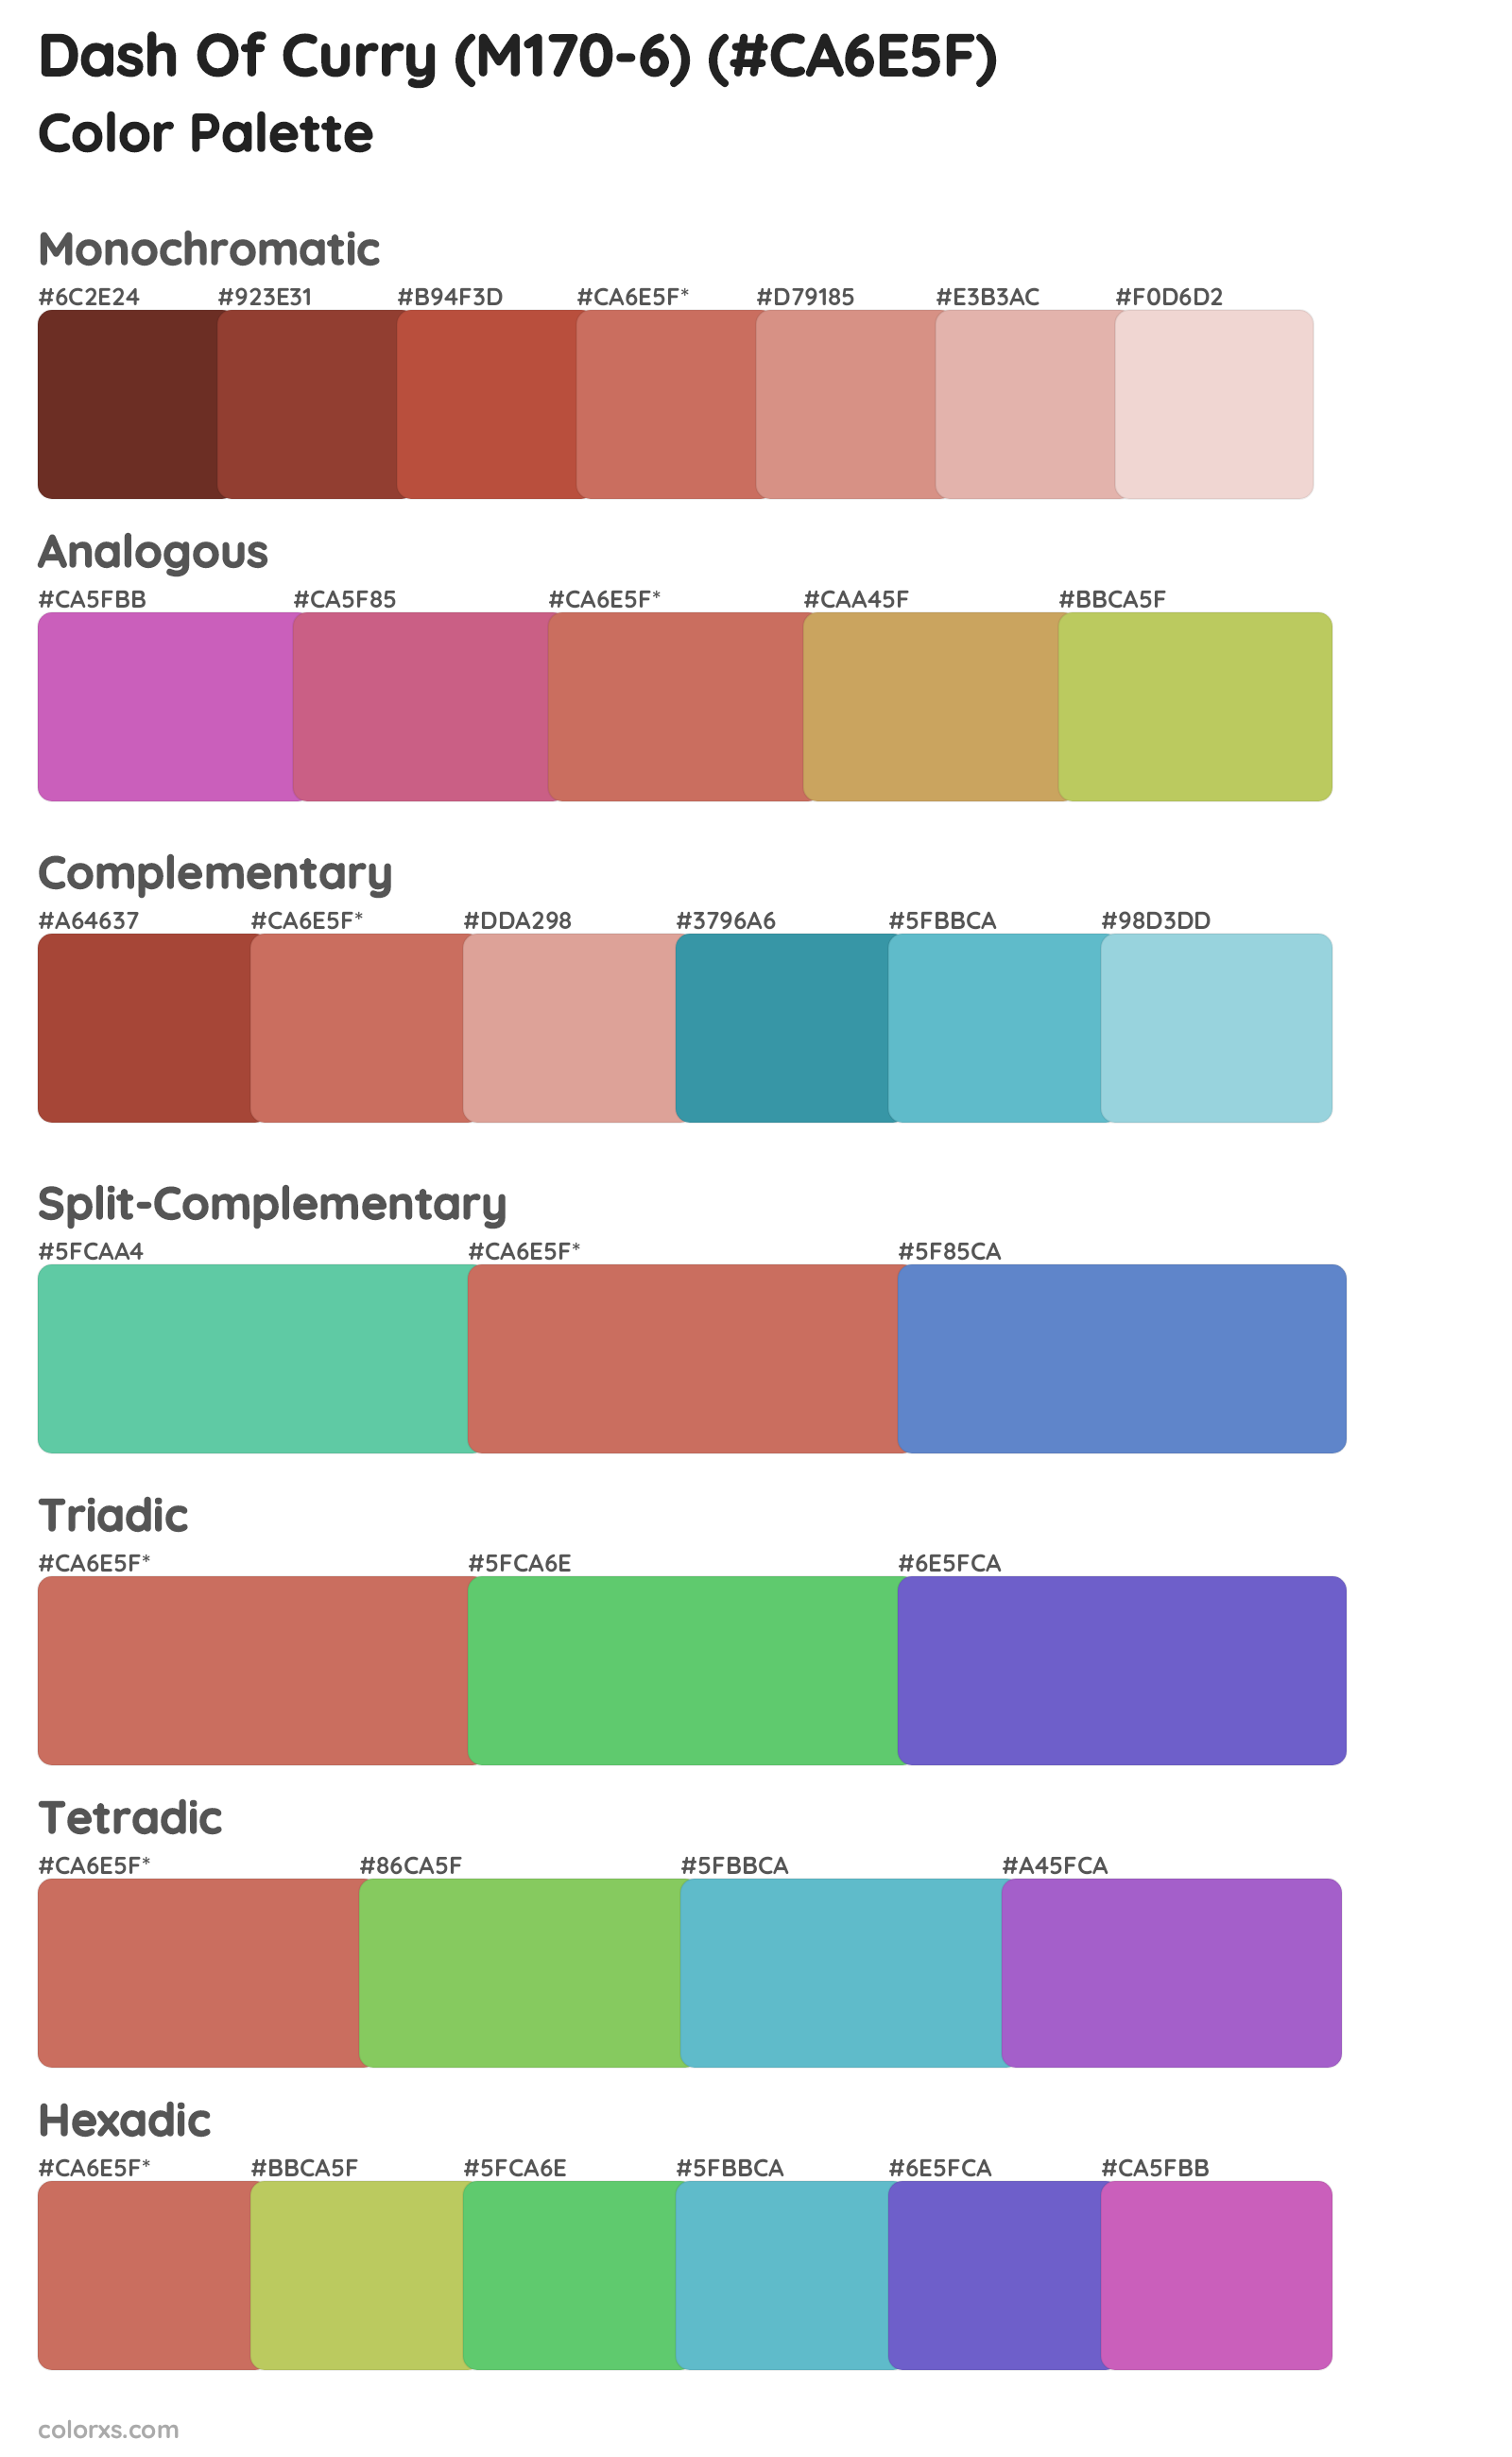 Dash Of Curry (M170-6) Color Scheme Palettes